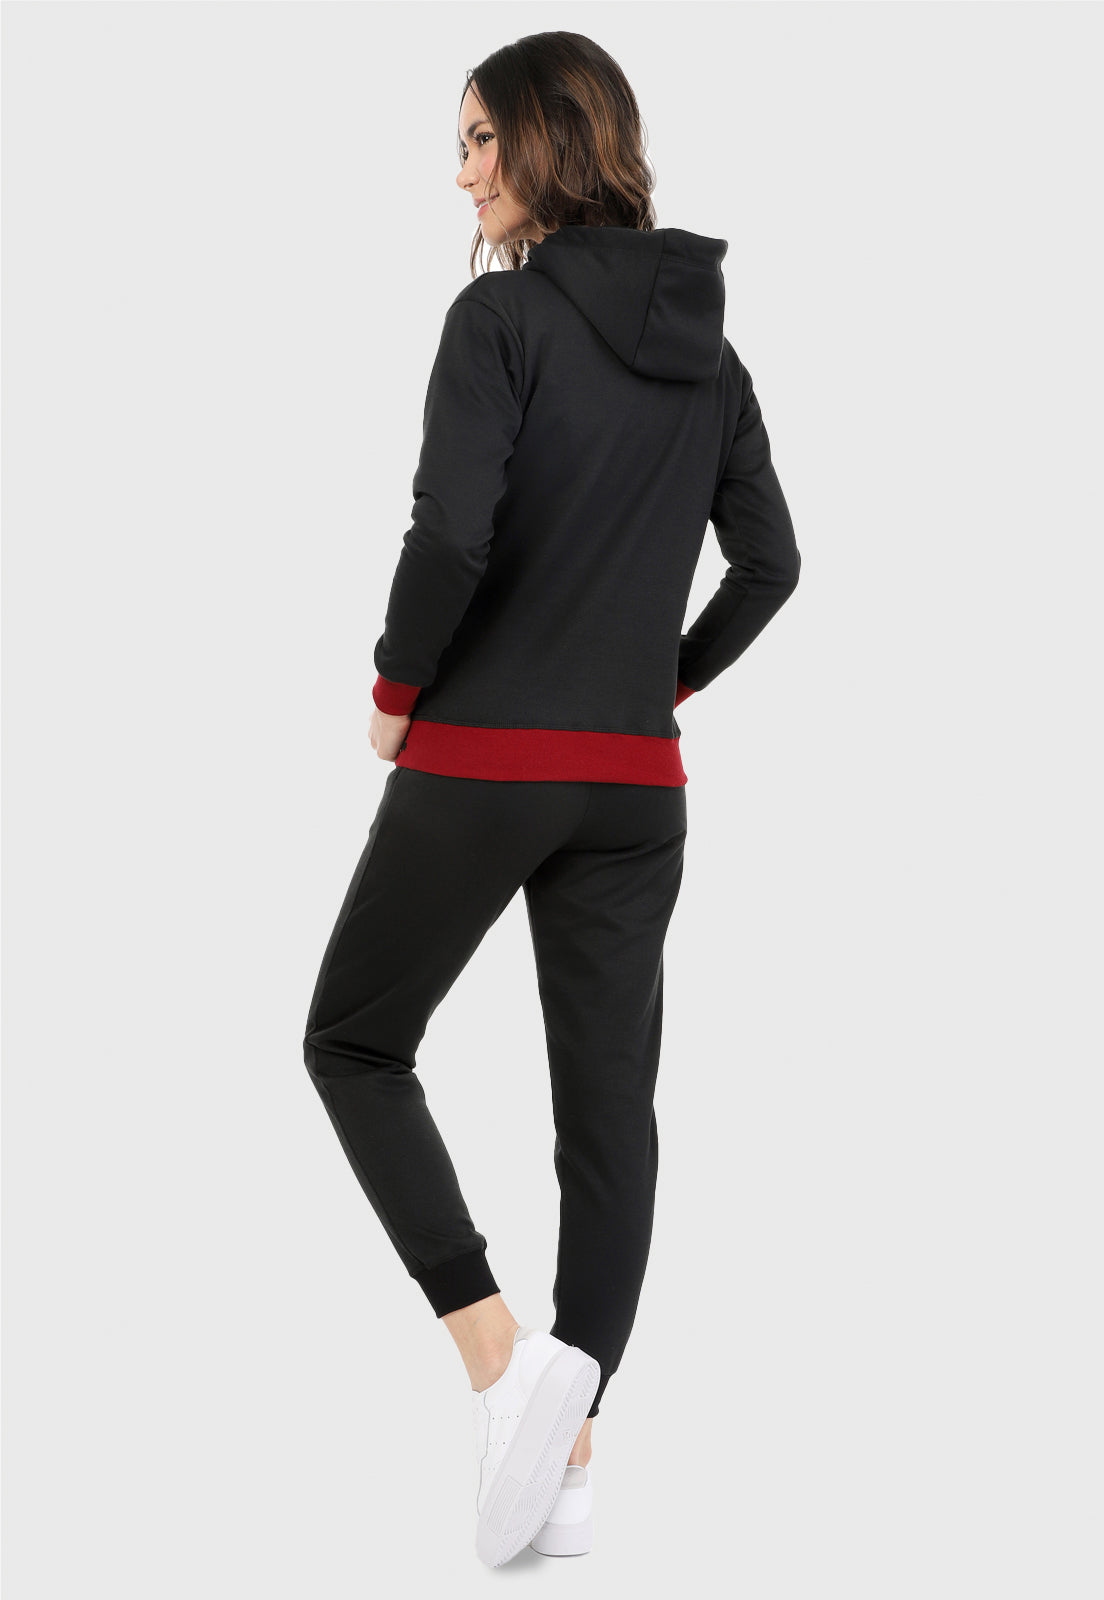 Mujer vista de espalda vistiendo la sudadera para mujer conjunto buzo hoodie negro con cerezas brillantes, ribs vinotinto en puño y cintura y pantalón de sudadera negro.